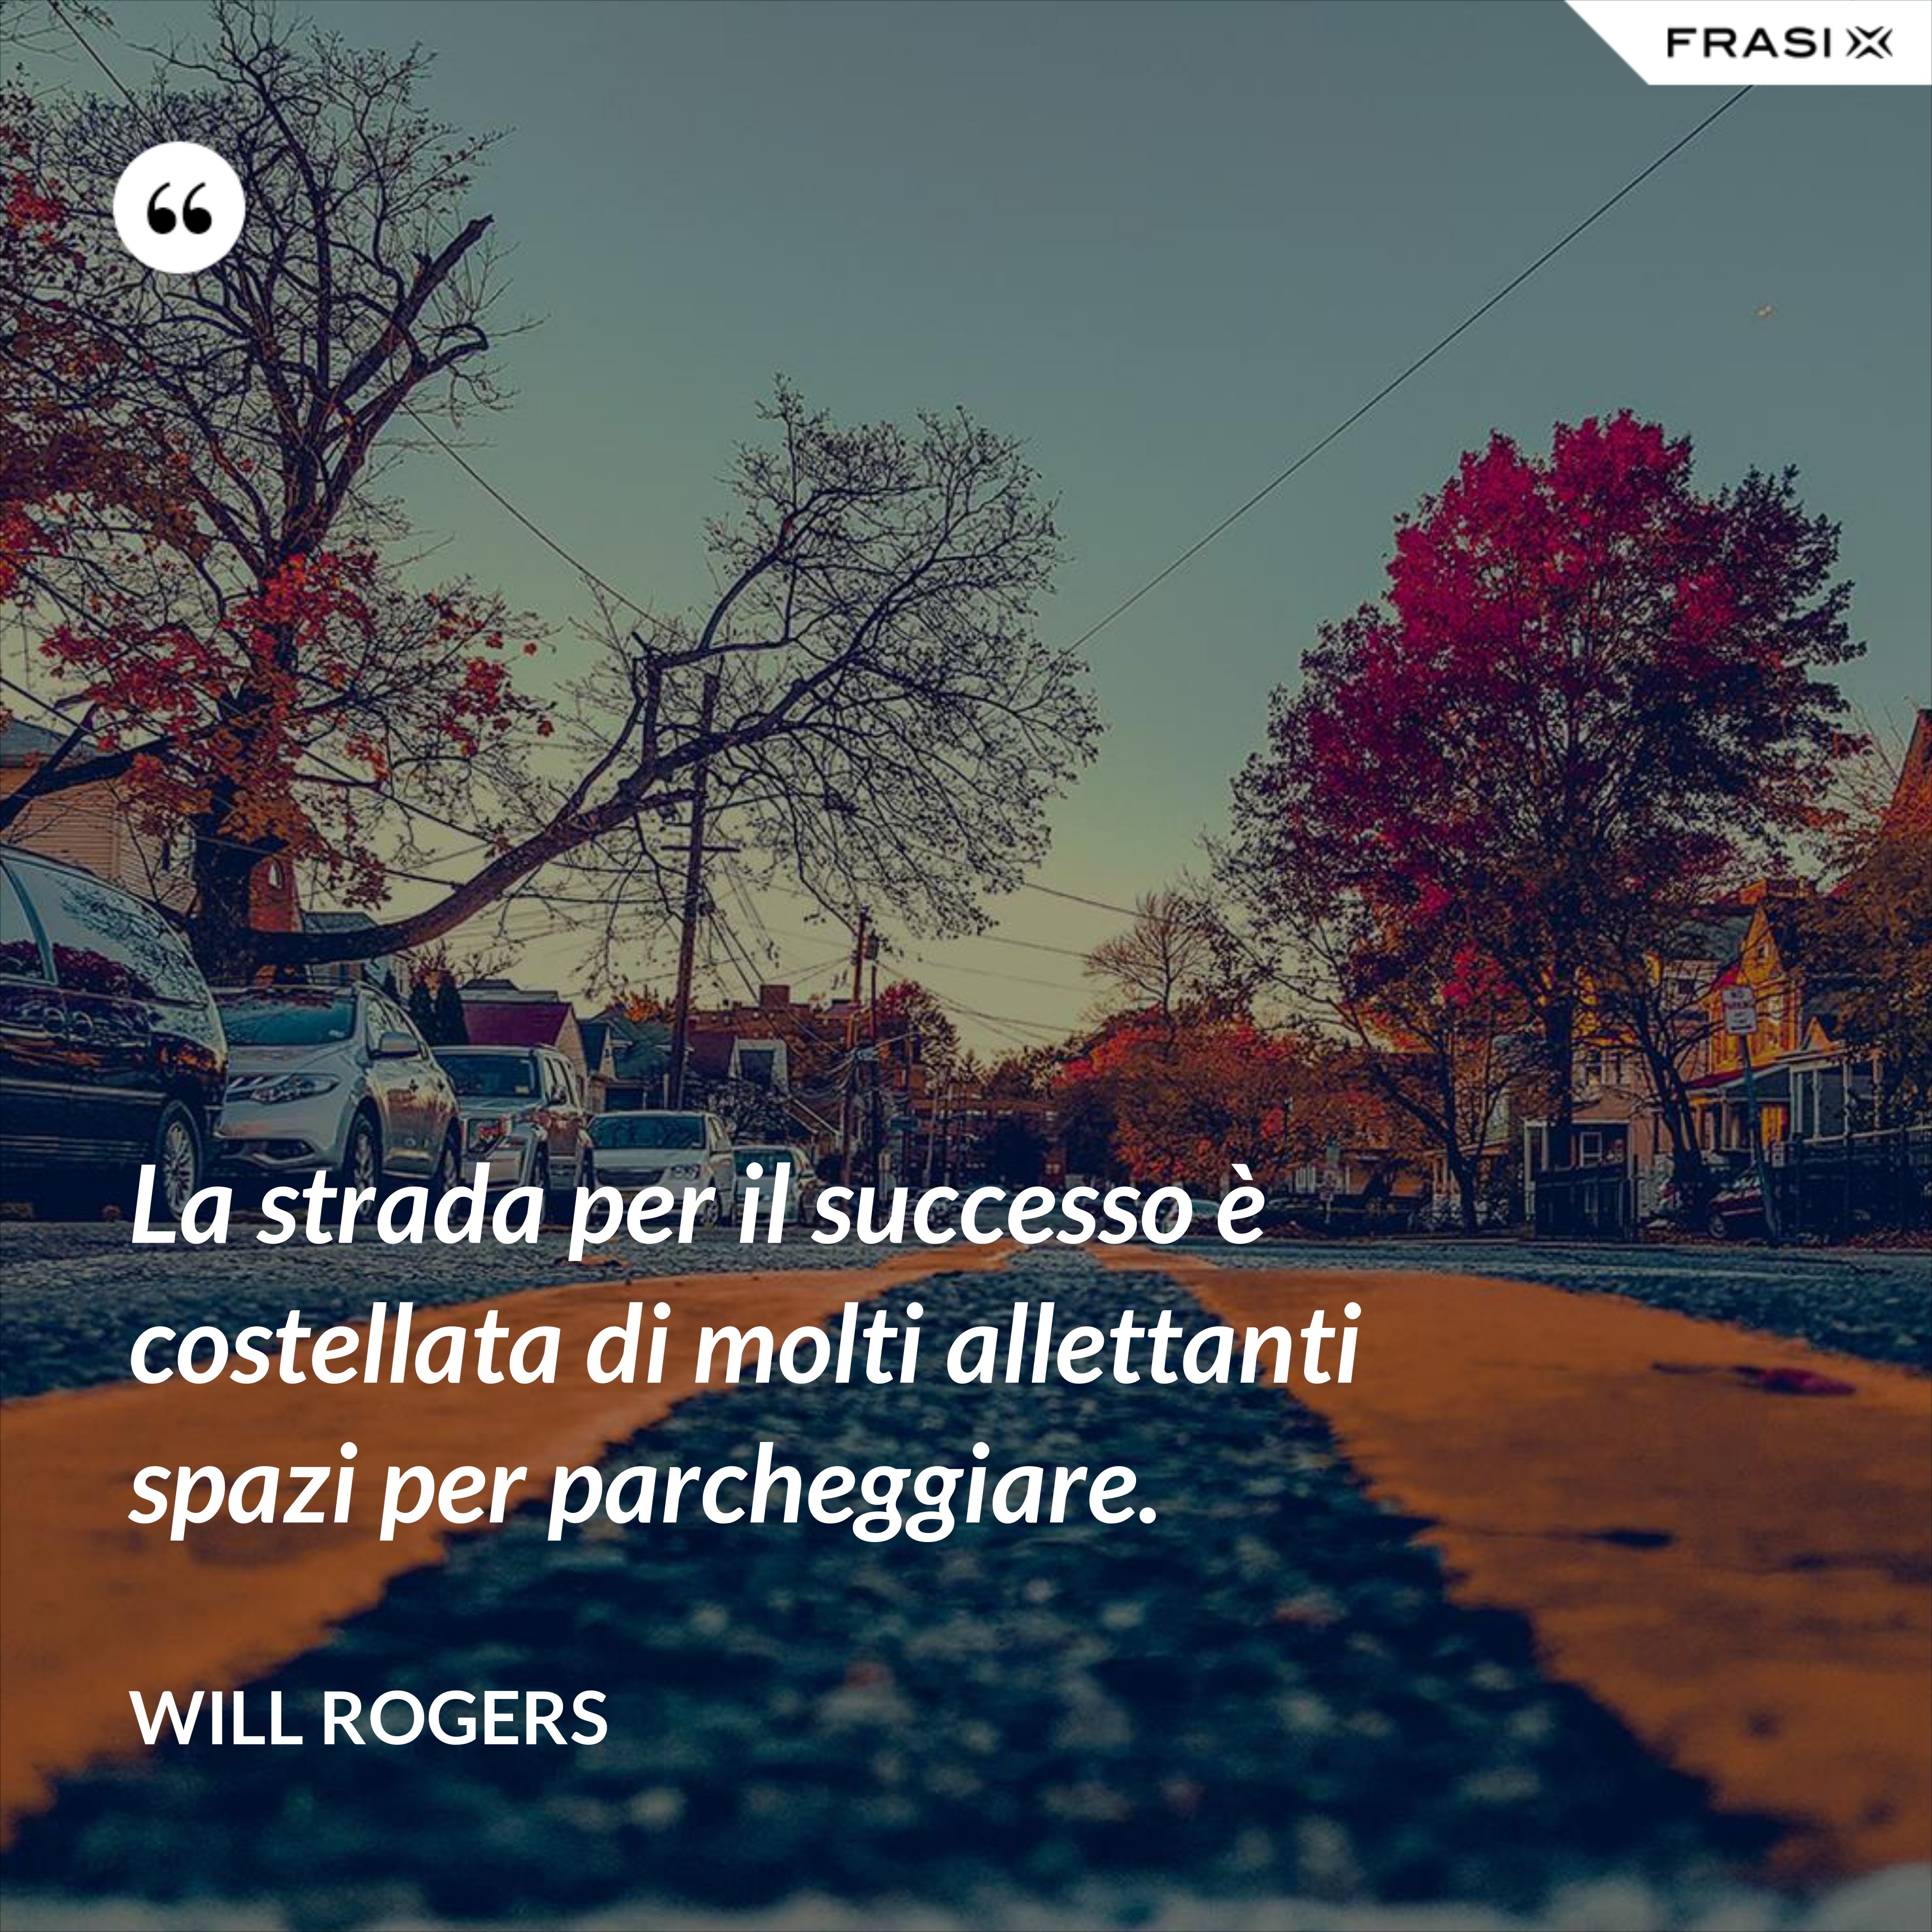 La strada per il successo è costellata di molti allettanti spazi per parcheggiare. - Will Rogers